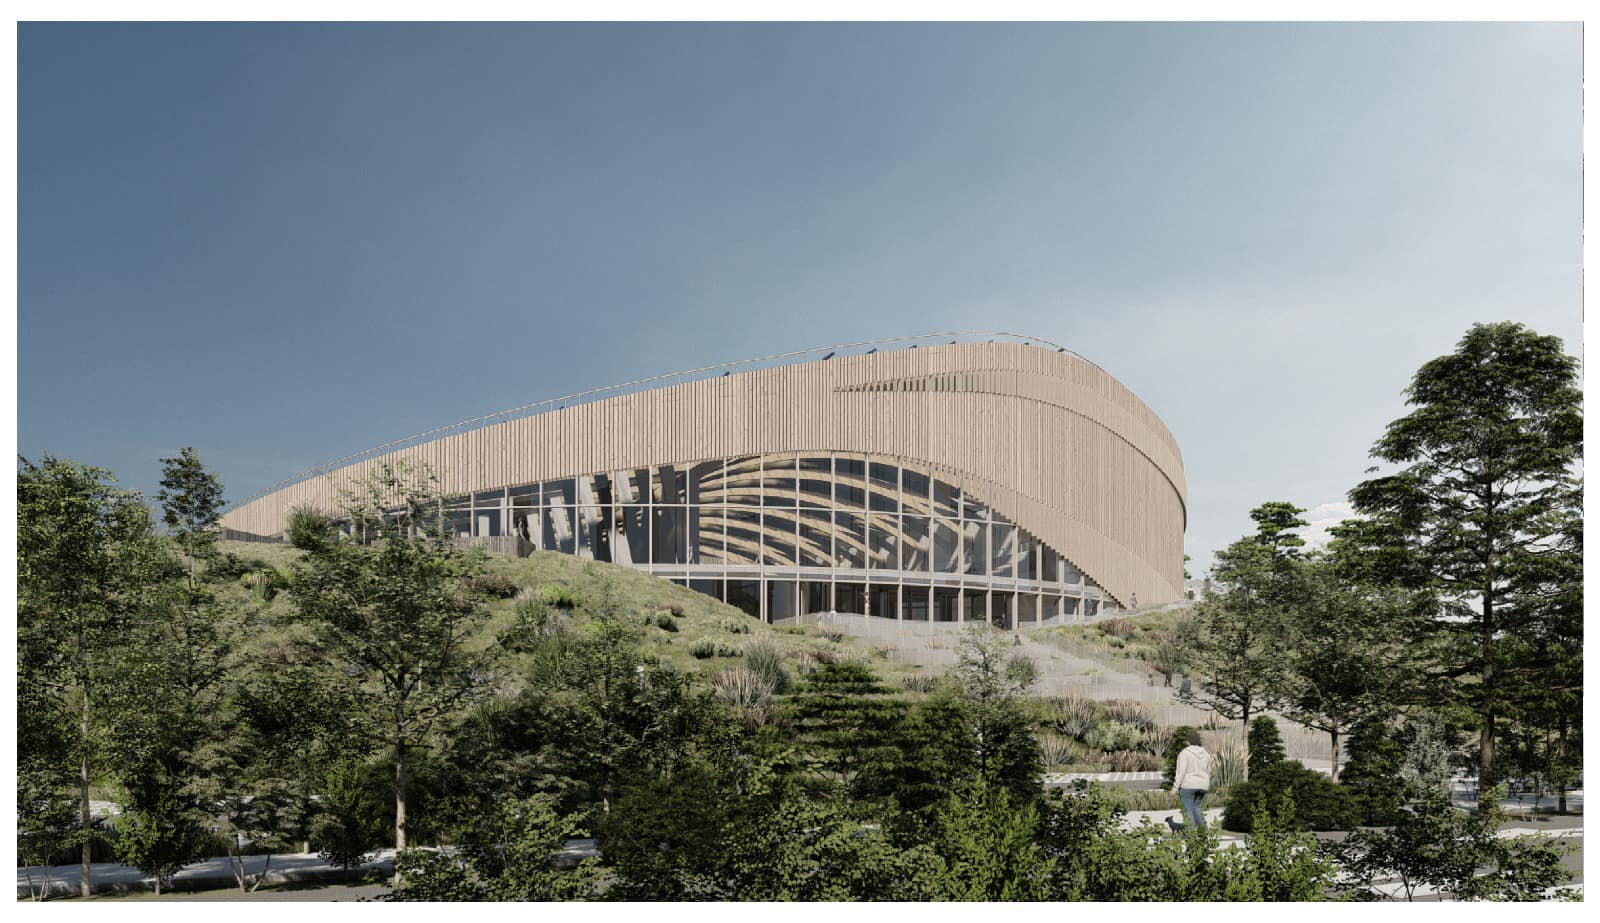 Proiect de 28 de milioane €, imagini spectaculoase! Așa va arăta bazinul olimpic David Popovici, care nu va fi în București